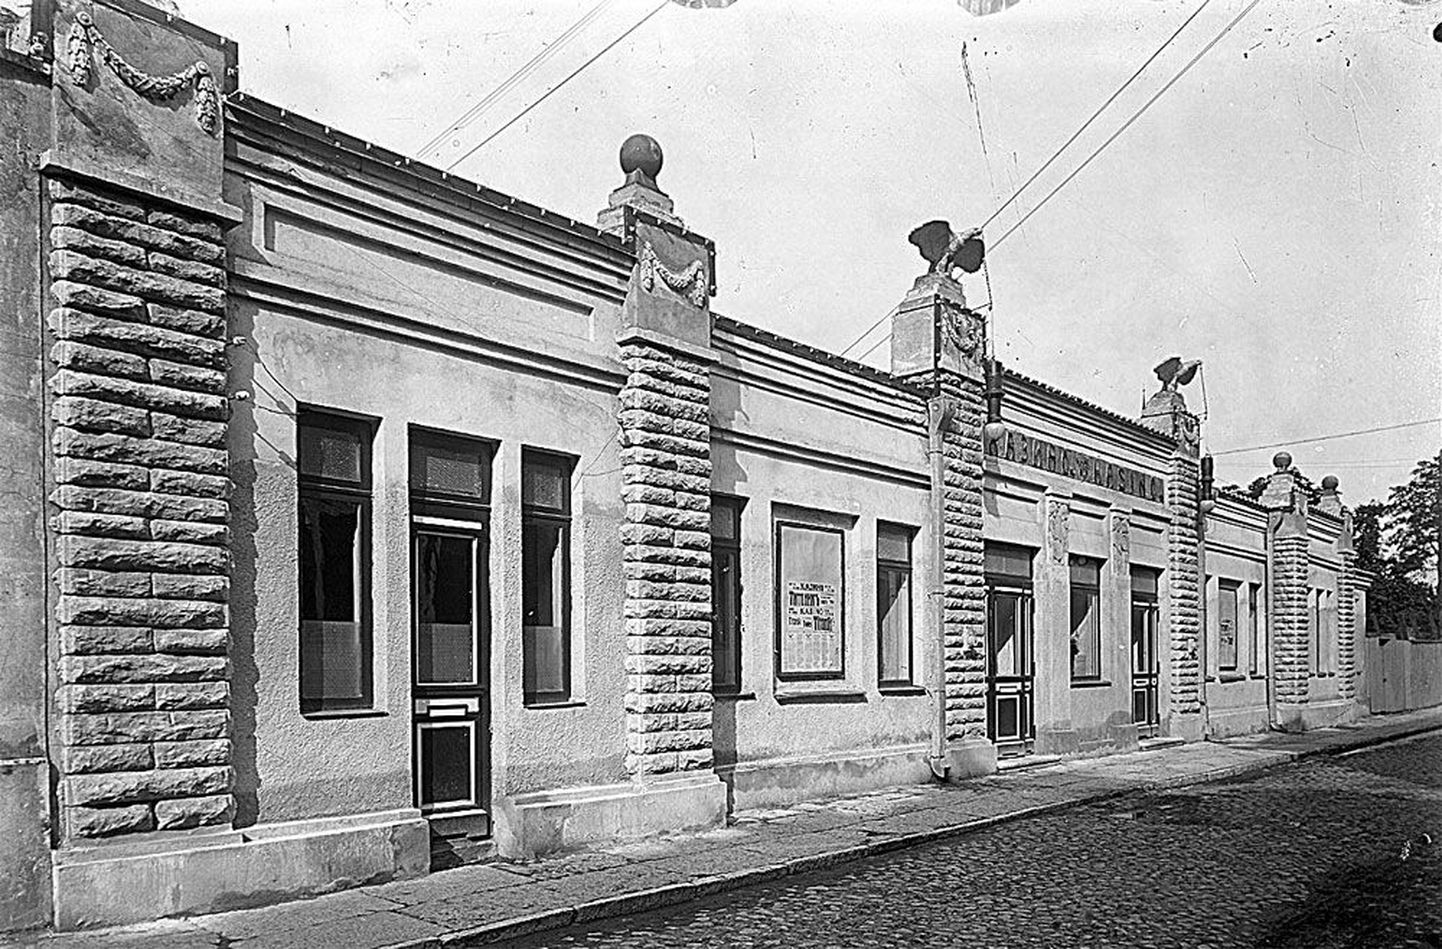 Esimesi esinduskinosid oli Tallinna Kasino, mis valmis 1911 ja asus Aia tänaval. 1930ndatel ehitati see ümber saunaks-basseiniks. Nüüd asub samas WW Passaaž ning peagi Prisma. Pildistatud 1910ndatel.